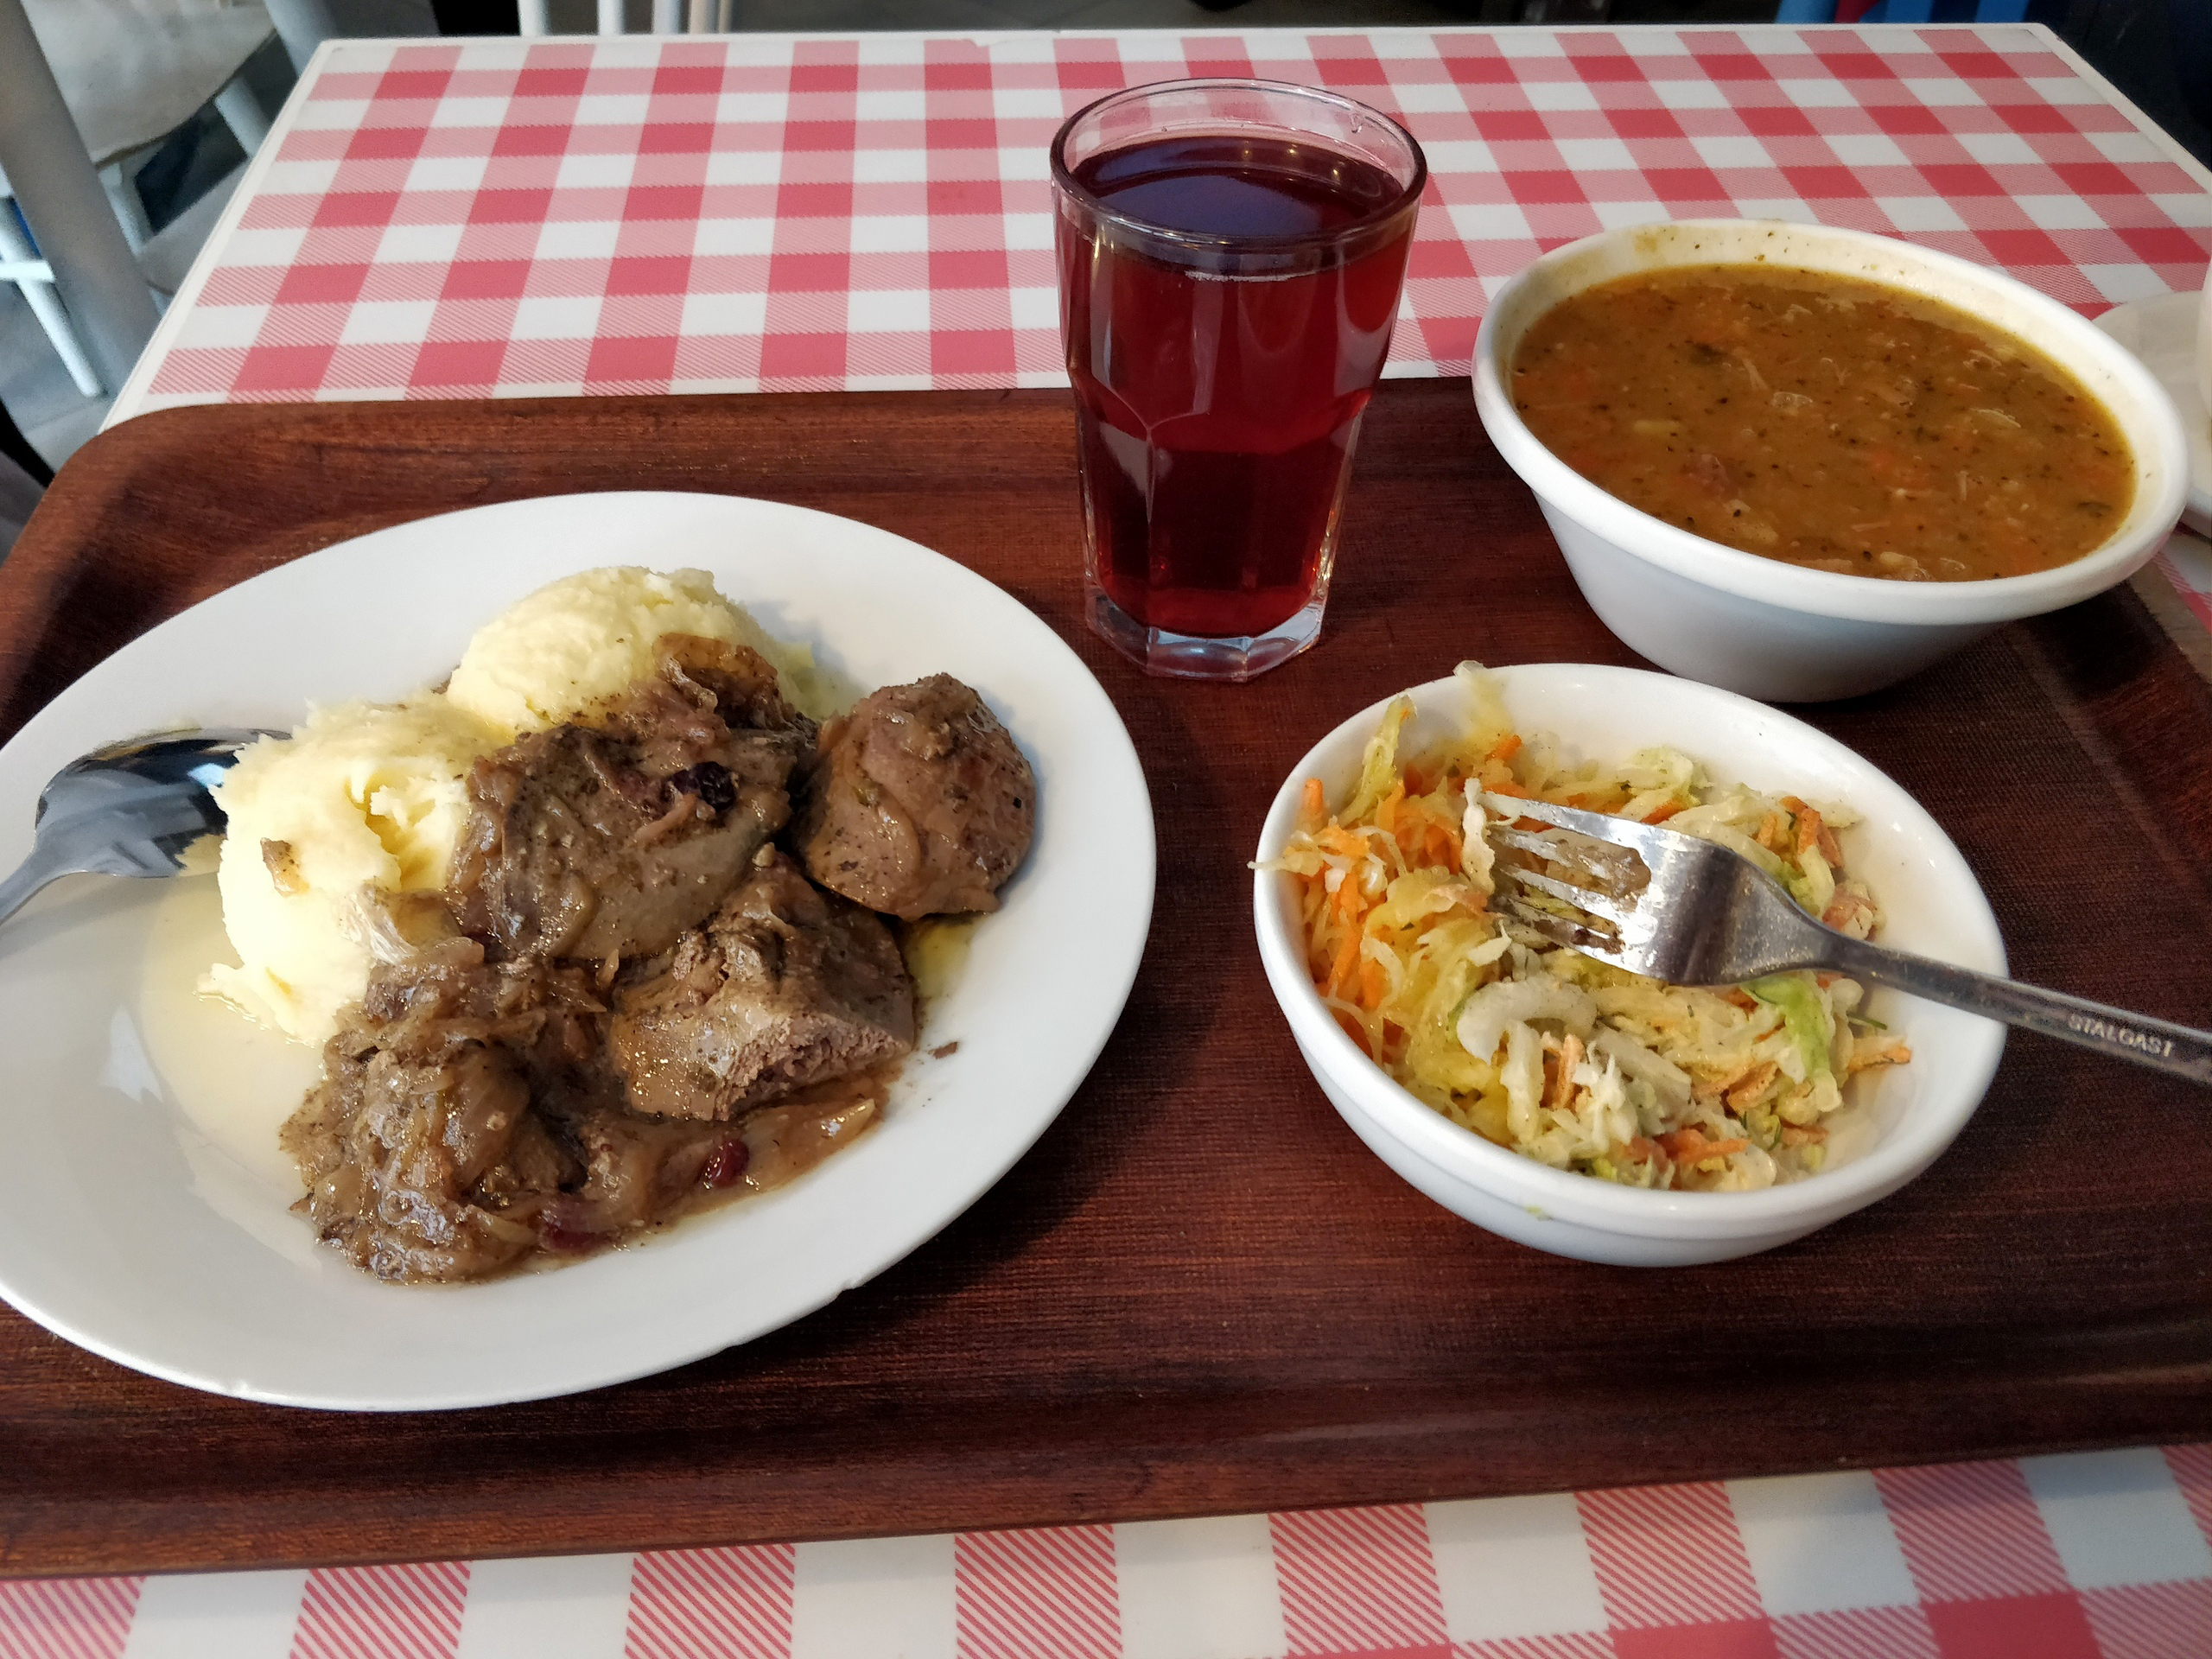 Пообедал в «молочном баре»: пюре, печенка, салат, гороховый суп с мясом и компот. Заплатил 19 zł (340 рублей)